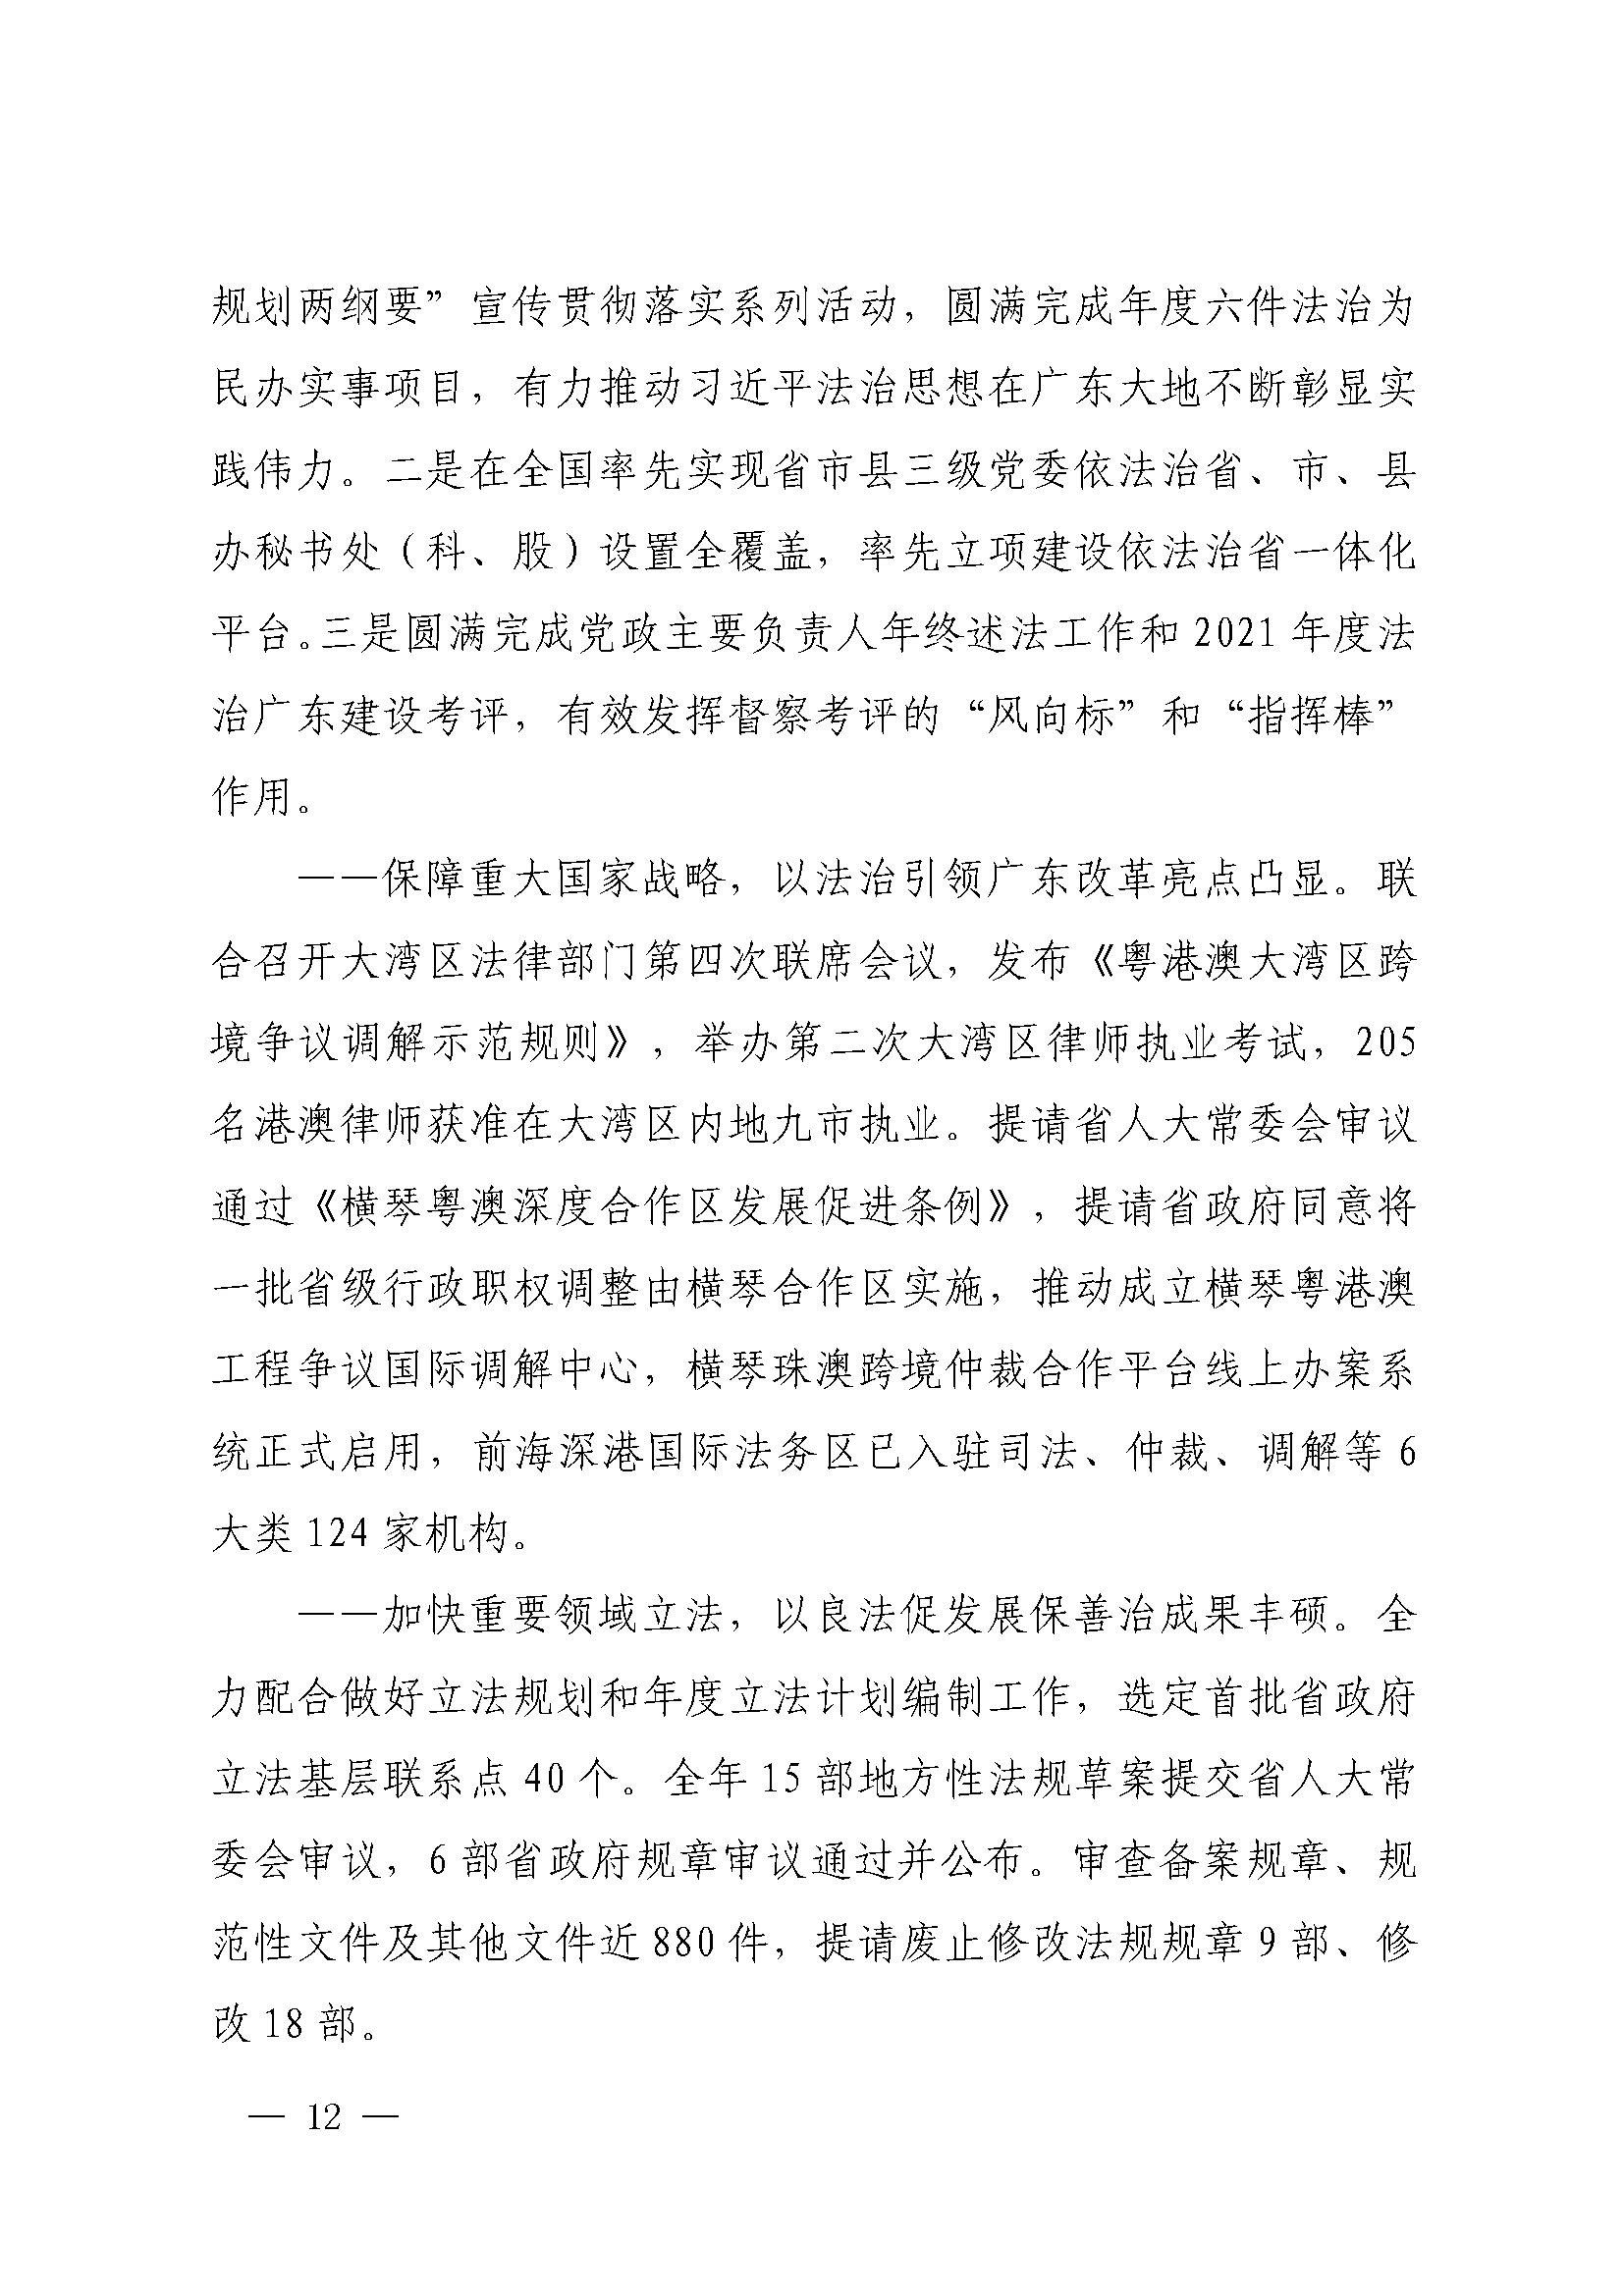 广东省司法厅2022年度部门整体支出绩效自评报告_页面_12.jpg